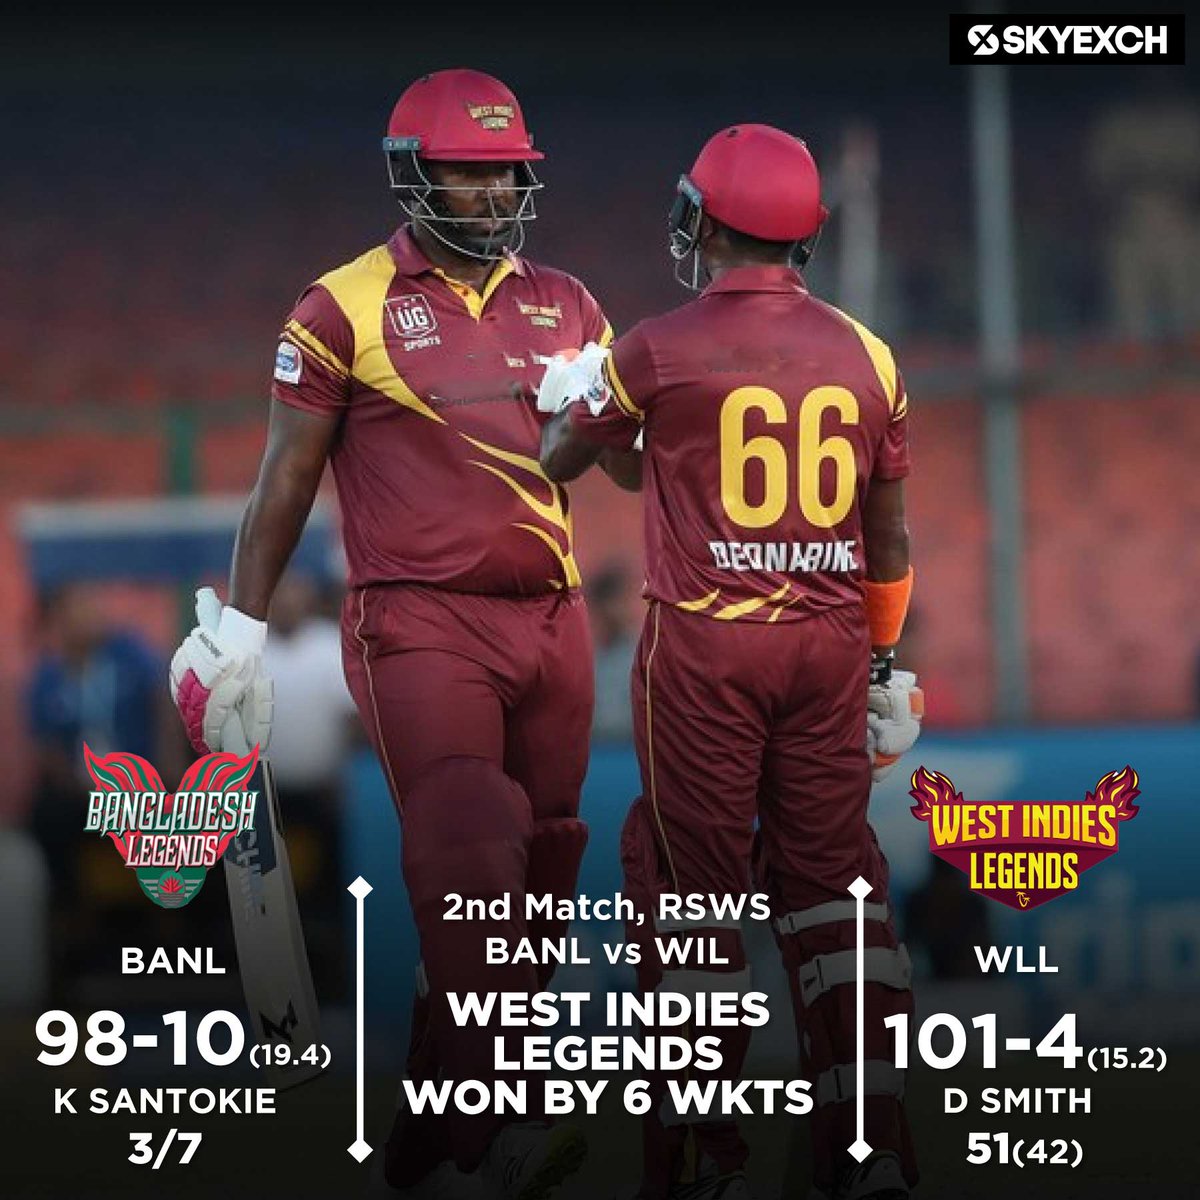 West Indies Legends Defeated Bangladesh Legends by 6 wickets in the 2nd match of Road Safety World Series 2022.
#LegendsLeagueCricket #BhilwaraGroup #SkyExchCricket #T20Cricket #SachinTendulkar #skyexch #BangladeshLegends #WestIndiesLegends